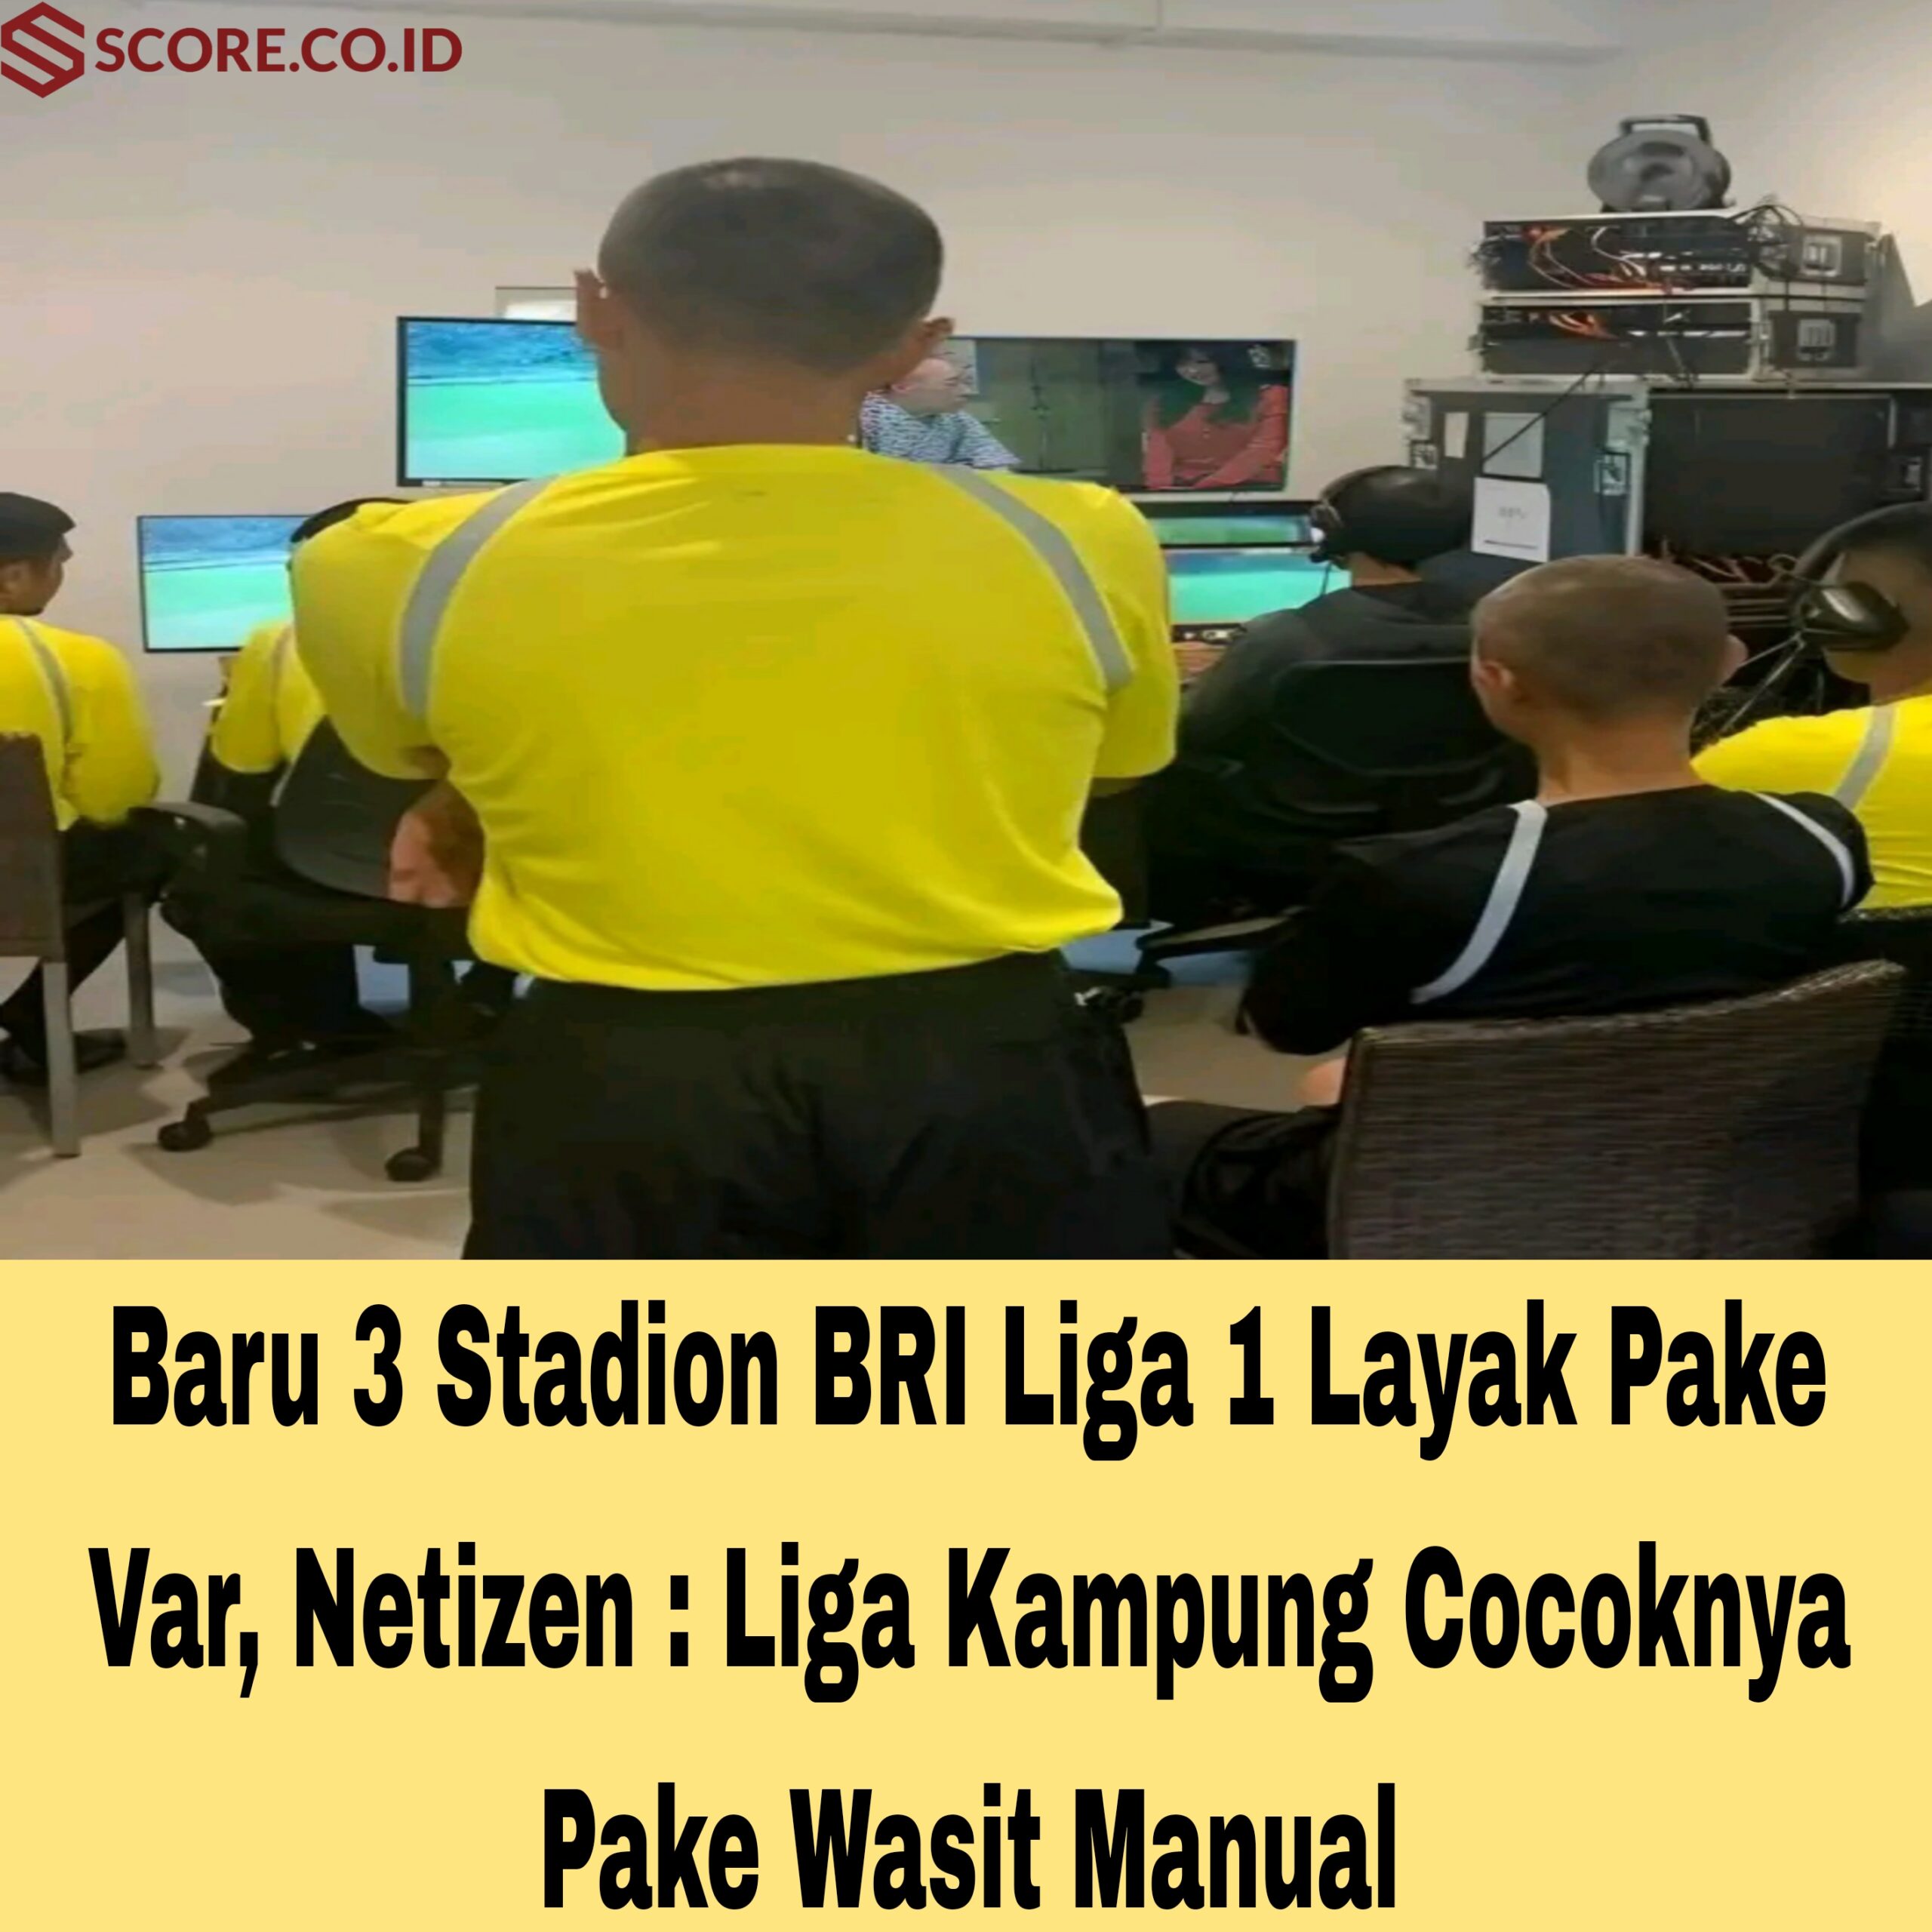 Baru 3 Stadion BRI Liga 1 Layak Pake Var, Netizen : Liga Kampung Cocoknya Pake Wasit Manual